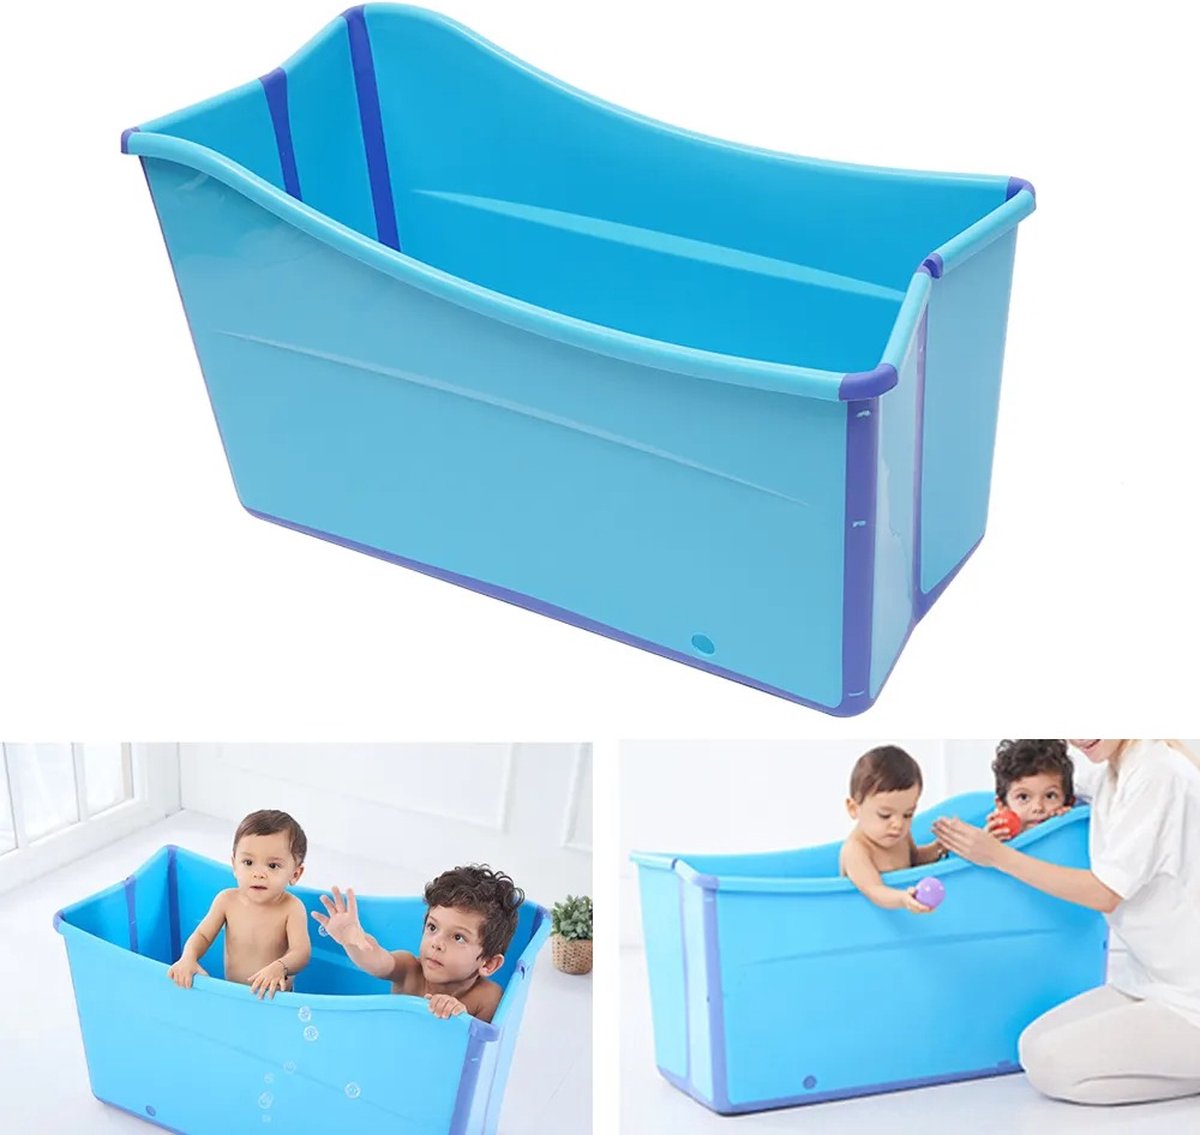 Jo-Jo Products 4U - Opvouwbaar Bad - Zitbad voor Volwassenen - IJsbad - Ice Bath - Dompelbad - Kinderbadje - Reisbad - Opvouwbare Badkuip - Ultieme Ontspanning voor Volwassenen en Kinderen!